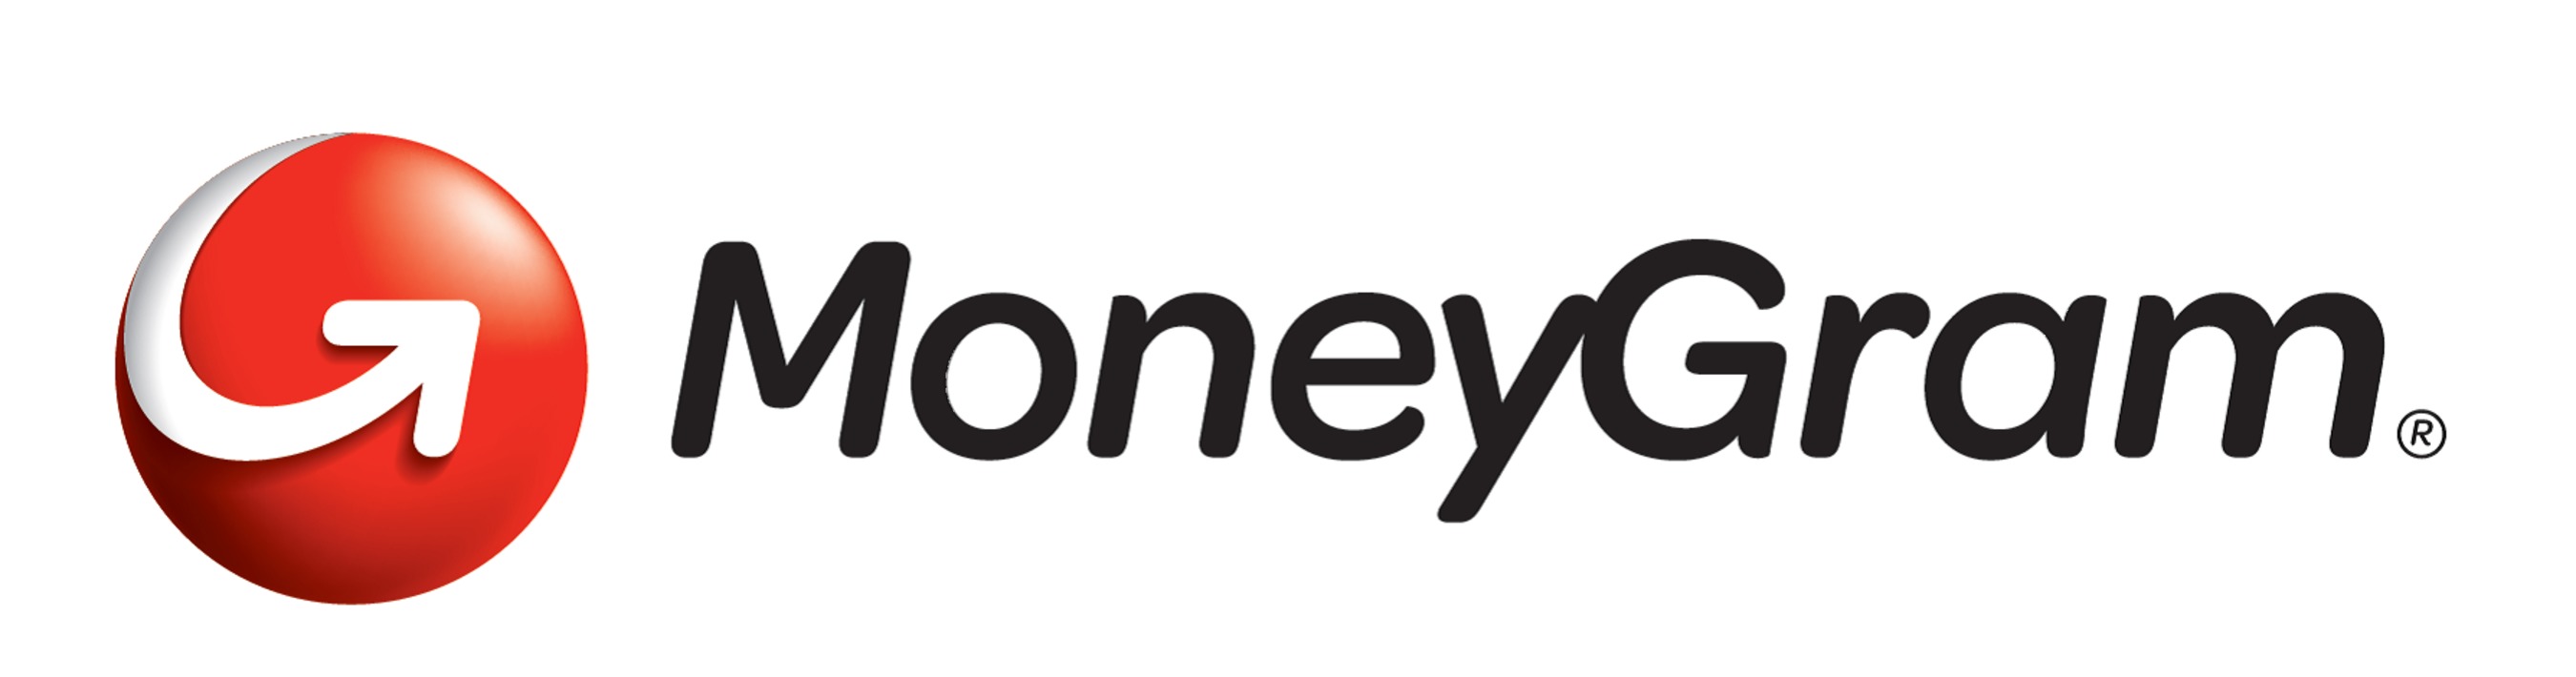 MoneyGram ofrece servicios de transferencia de dinero en Panamá en ...